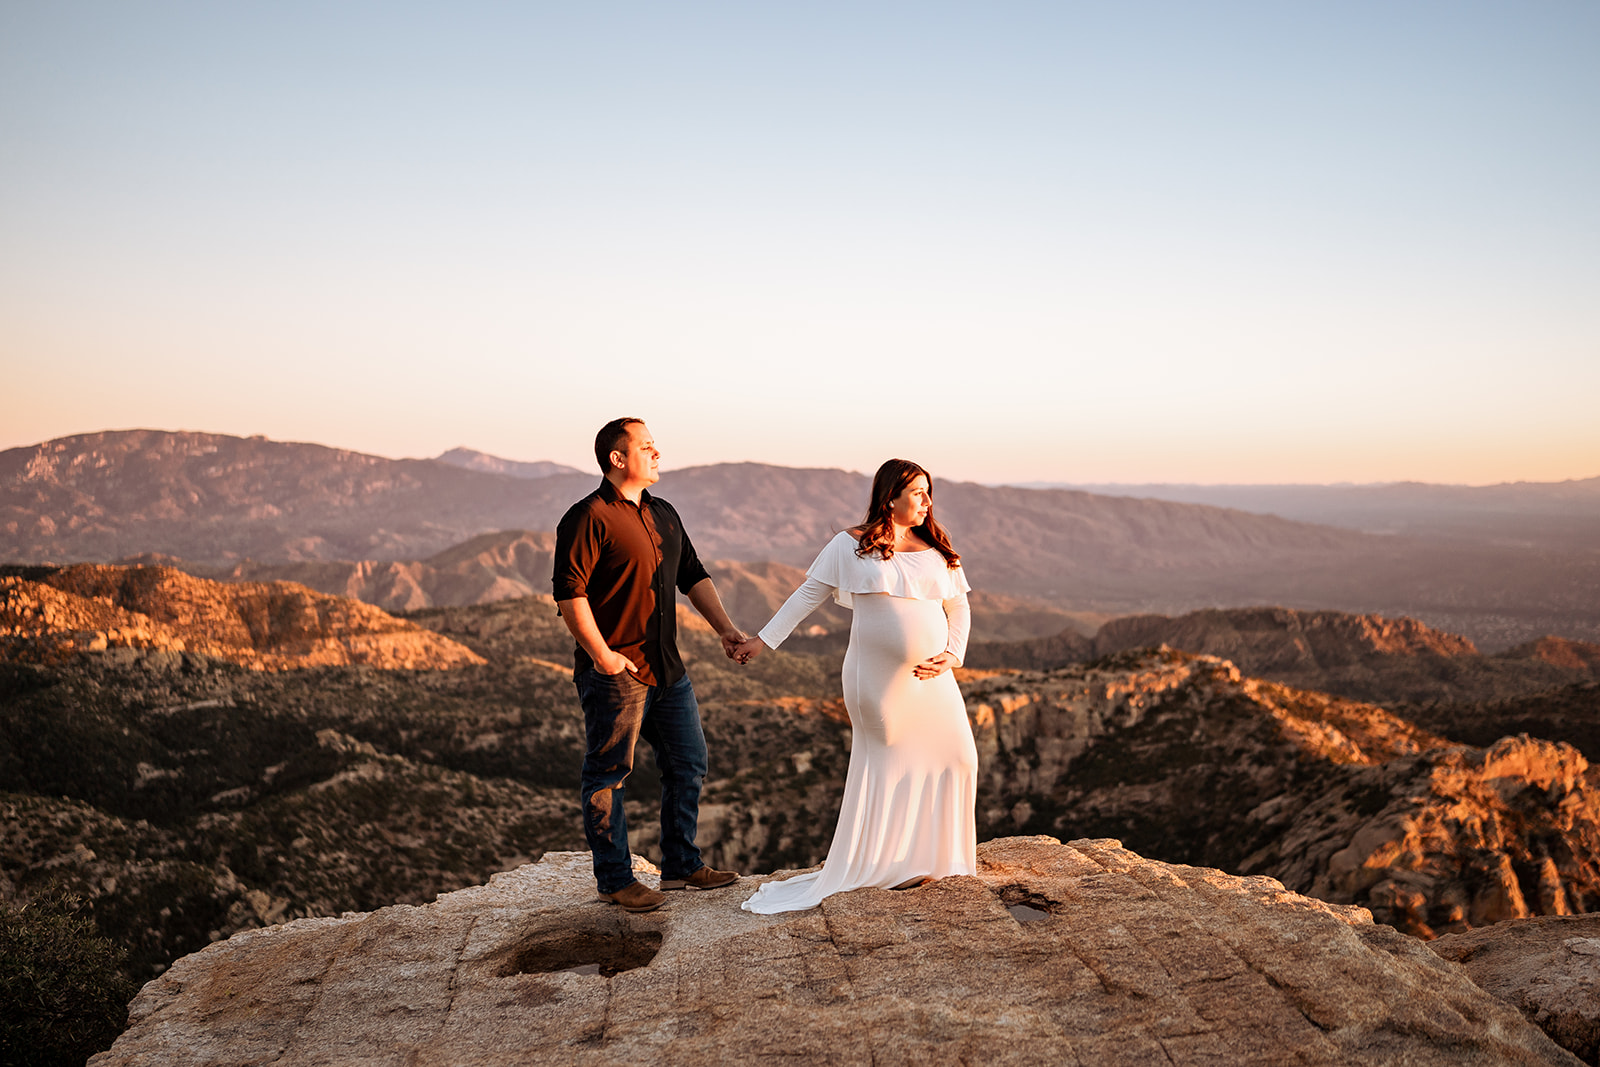 sunset maternity photos at Mount Lemmon near Tucson Arizona